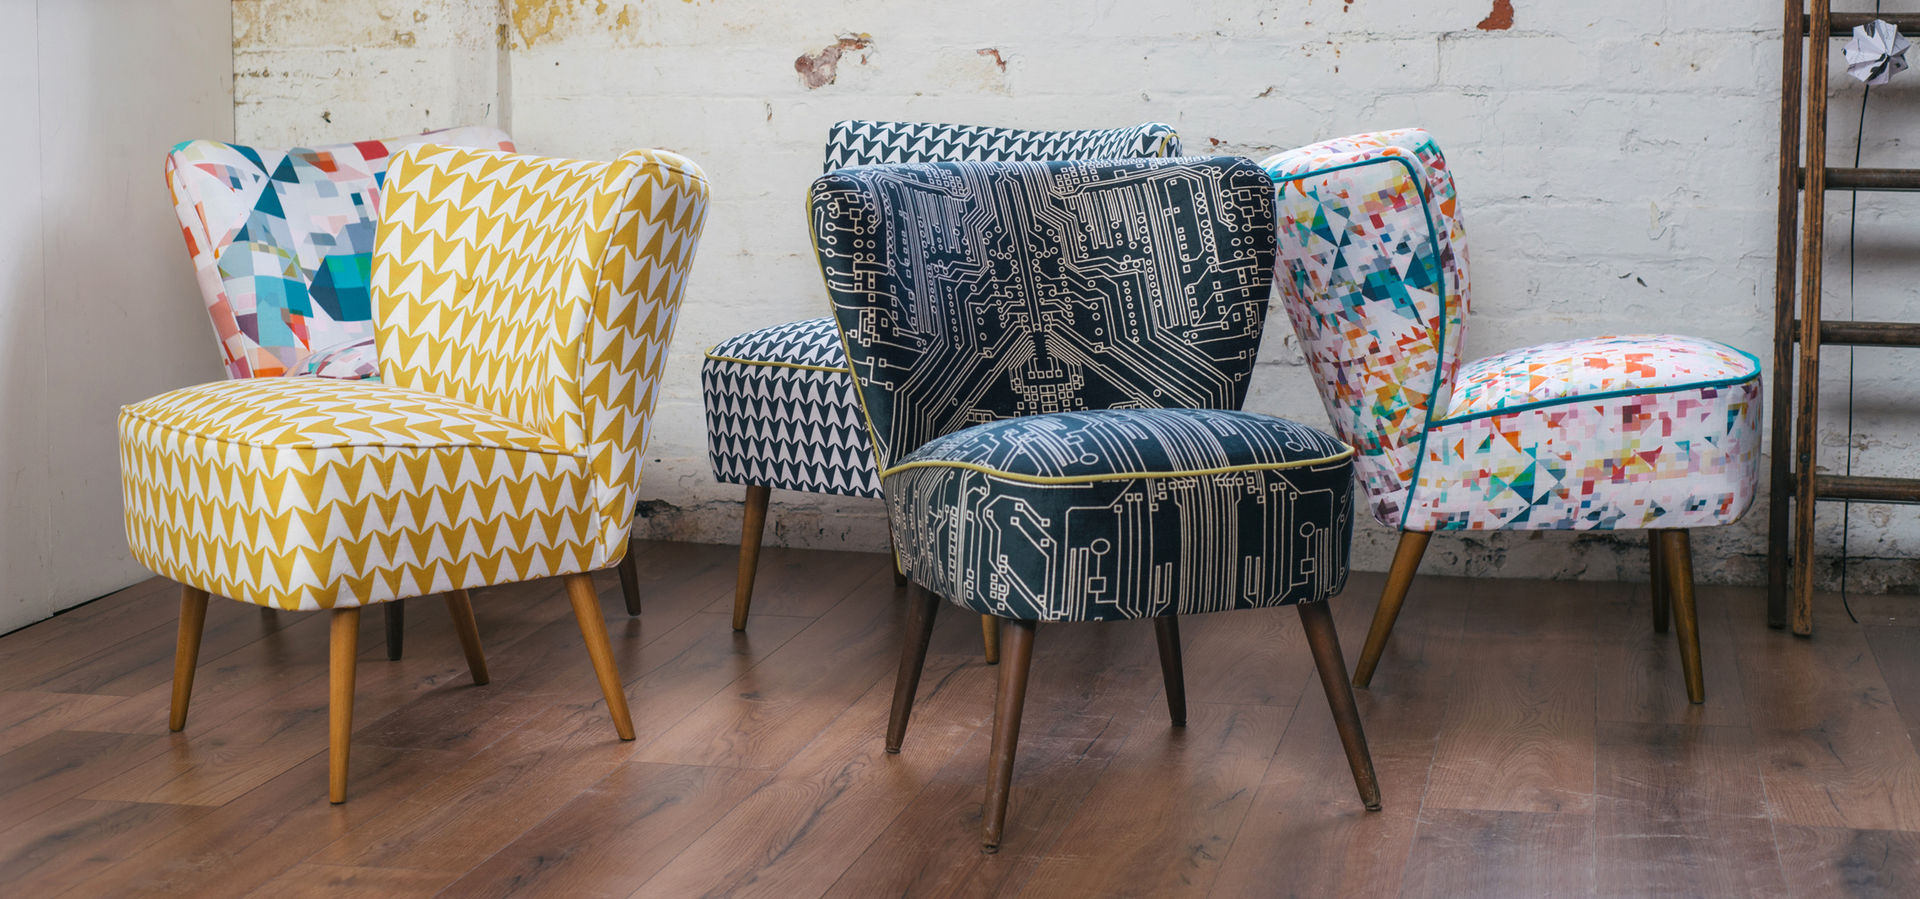 Flocktail Chairs - Luku Home Luku Home Ruang Keluarga Gaya Eklektik Stools & chairs